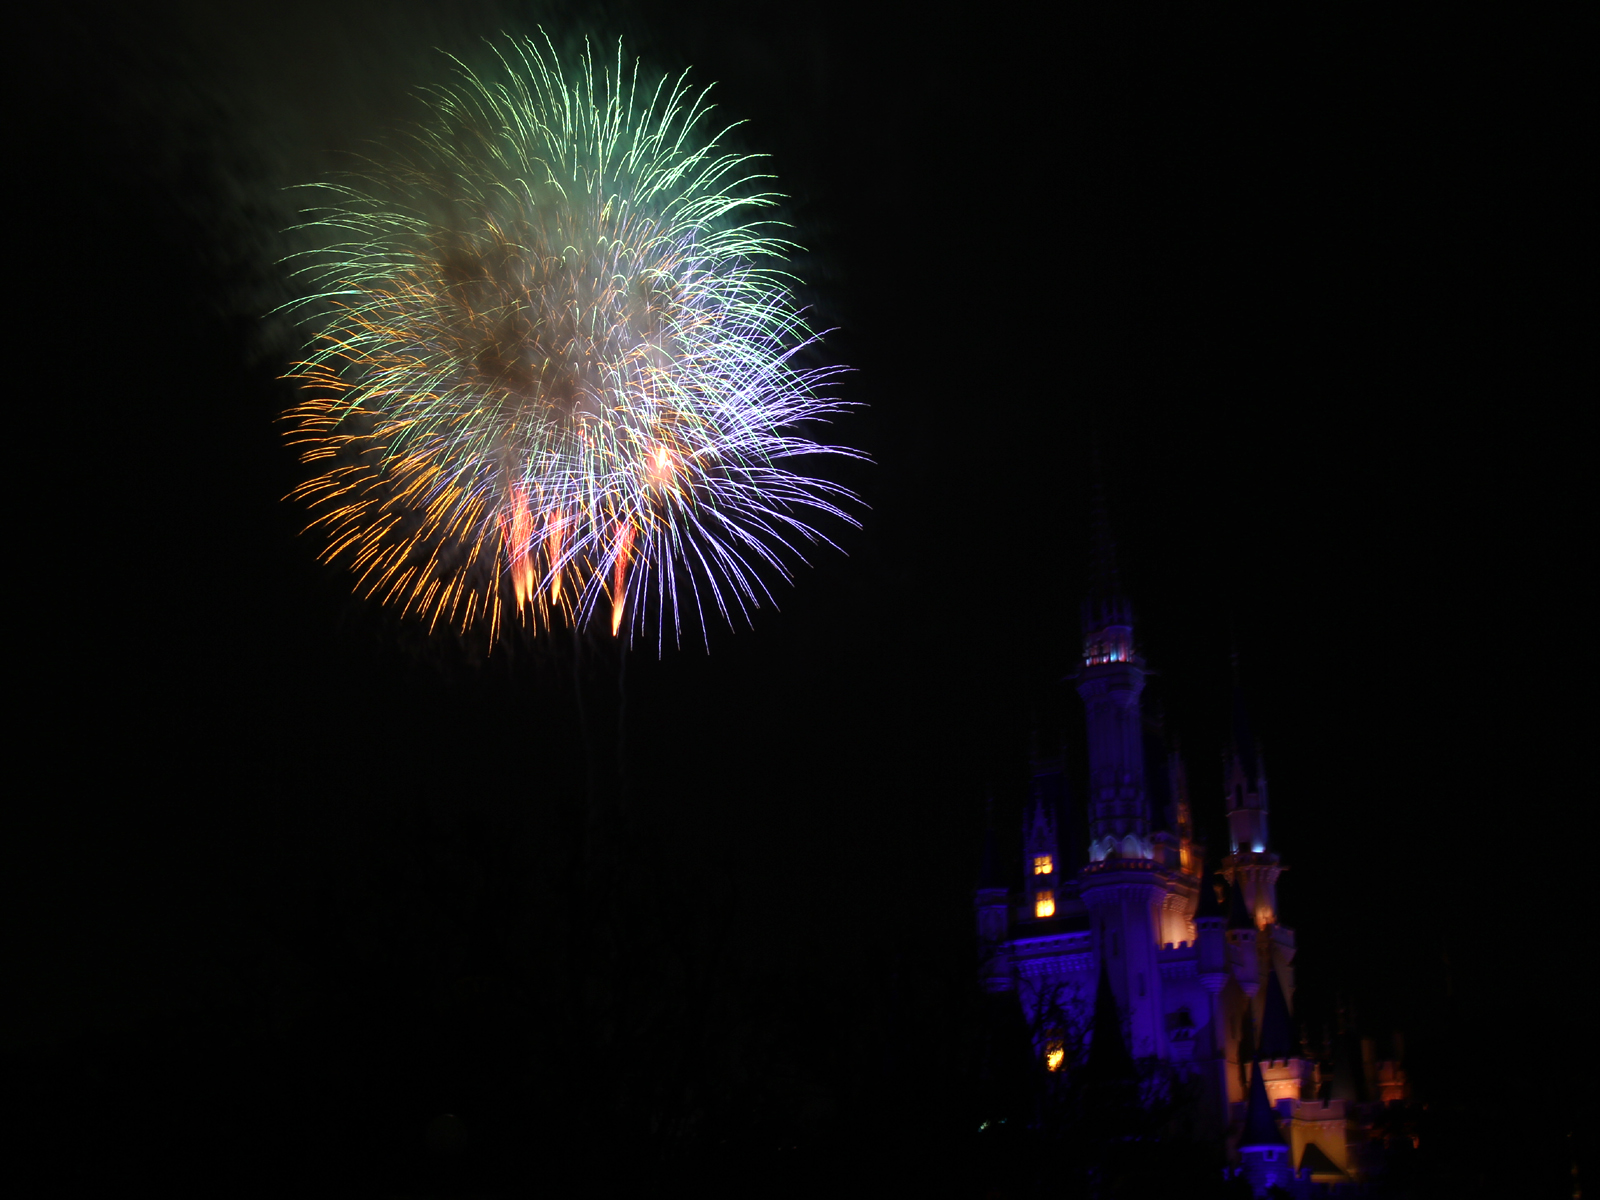 ディズニーマジックインザスカイ 花火 を綺麗に撮影する 時間や場所